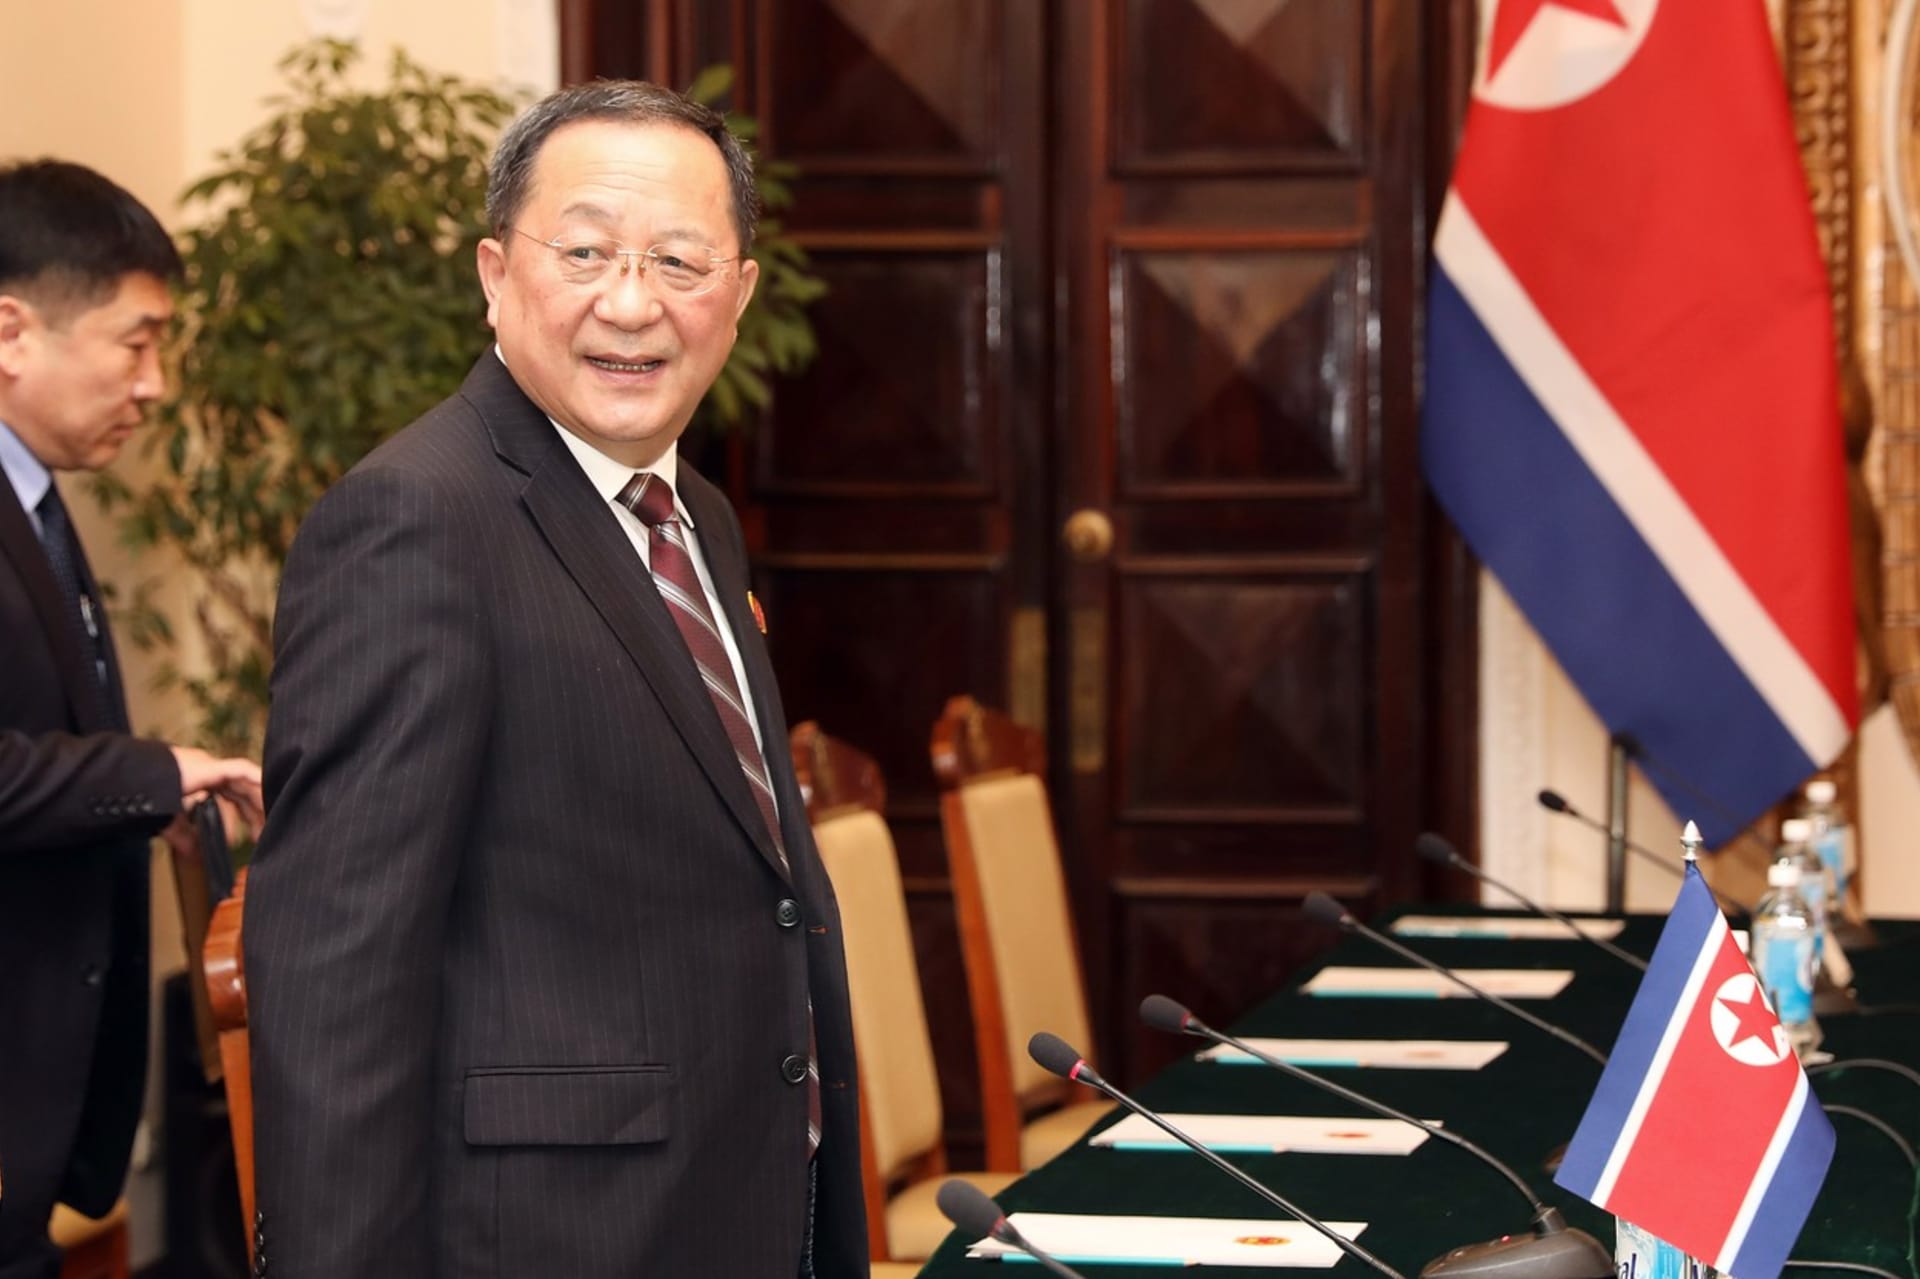 Severokorejský exministr zahraničí Ri Yong-ho během oficiální návštěvy Vietnamu